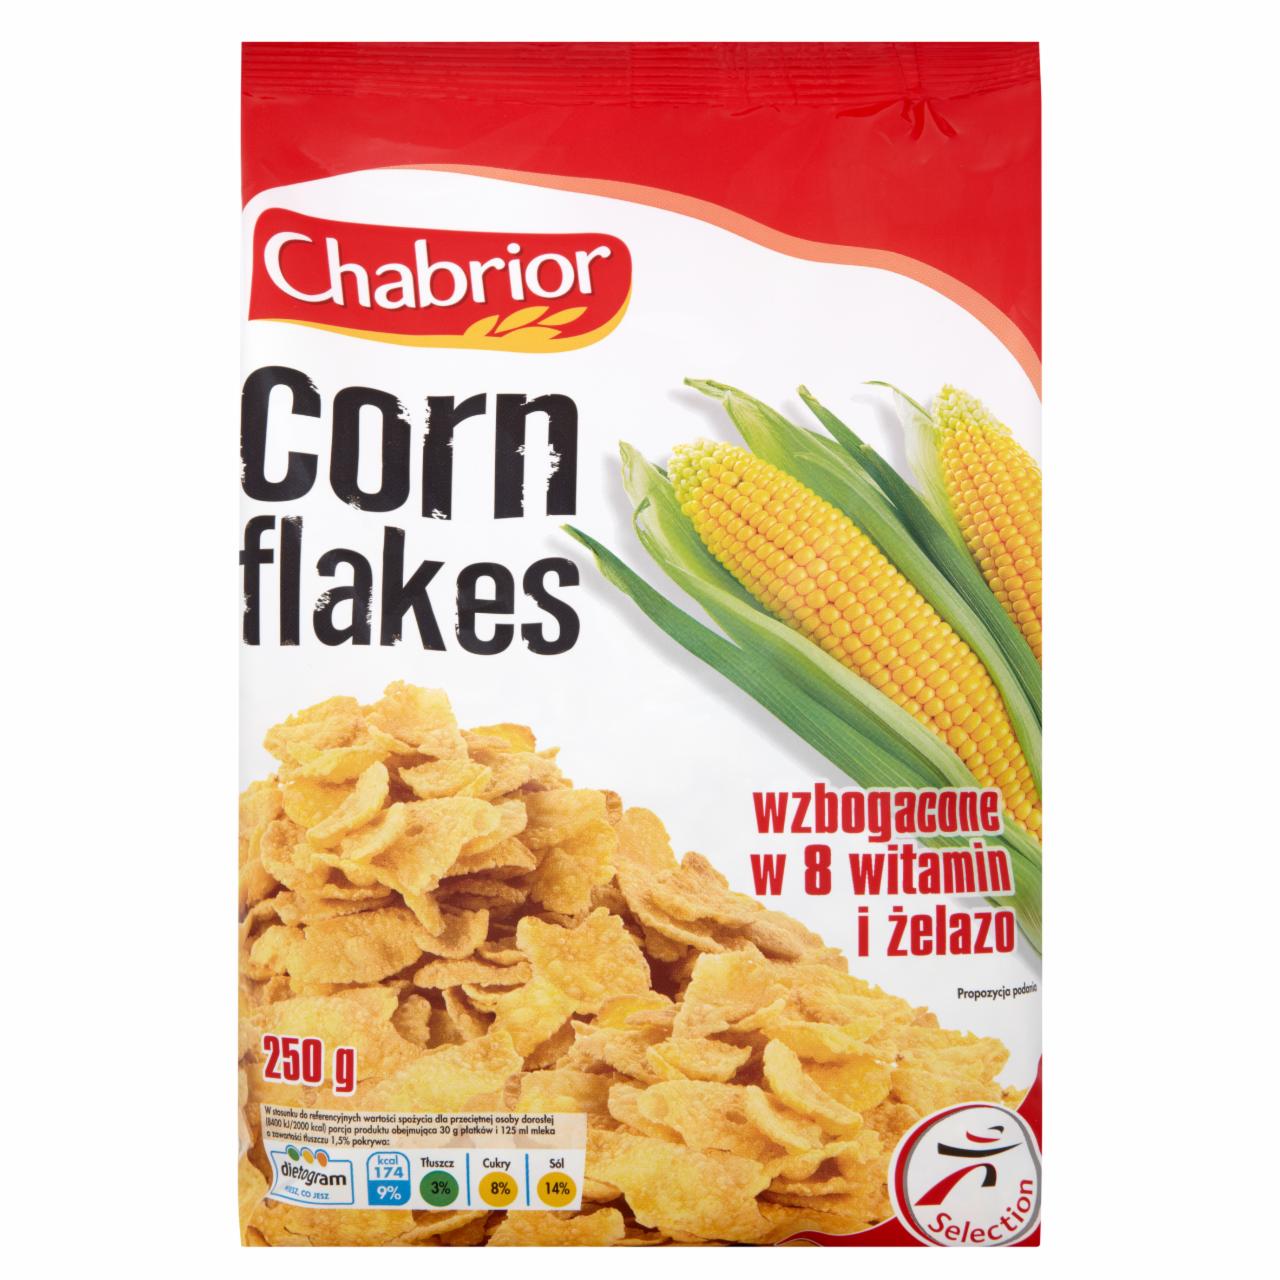 Zdjęcia - Chabrior Corn Flakes Płatki kukurydziane wzbogacone w 8 witamin i żelazo 250 g